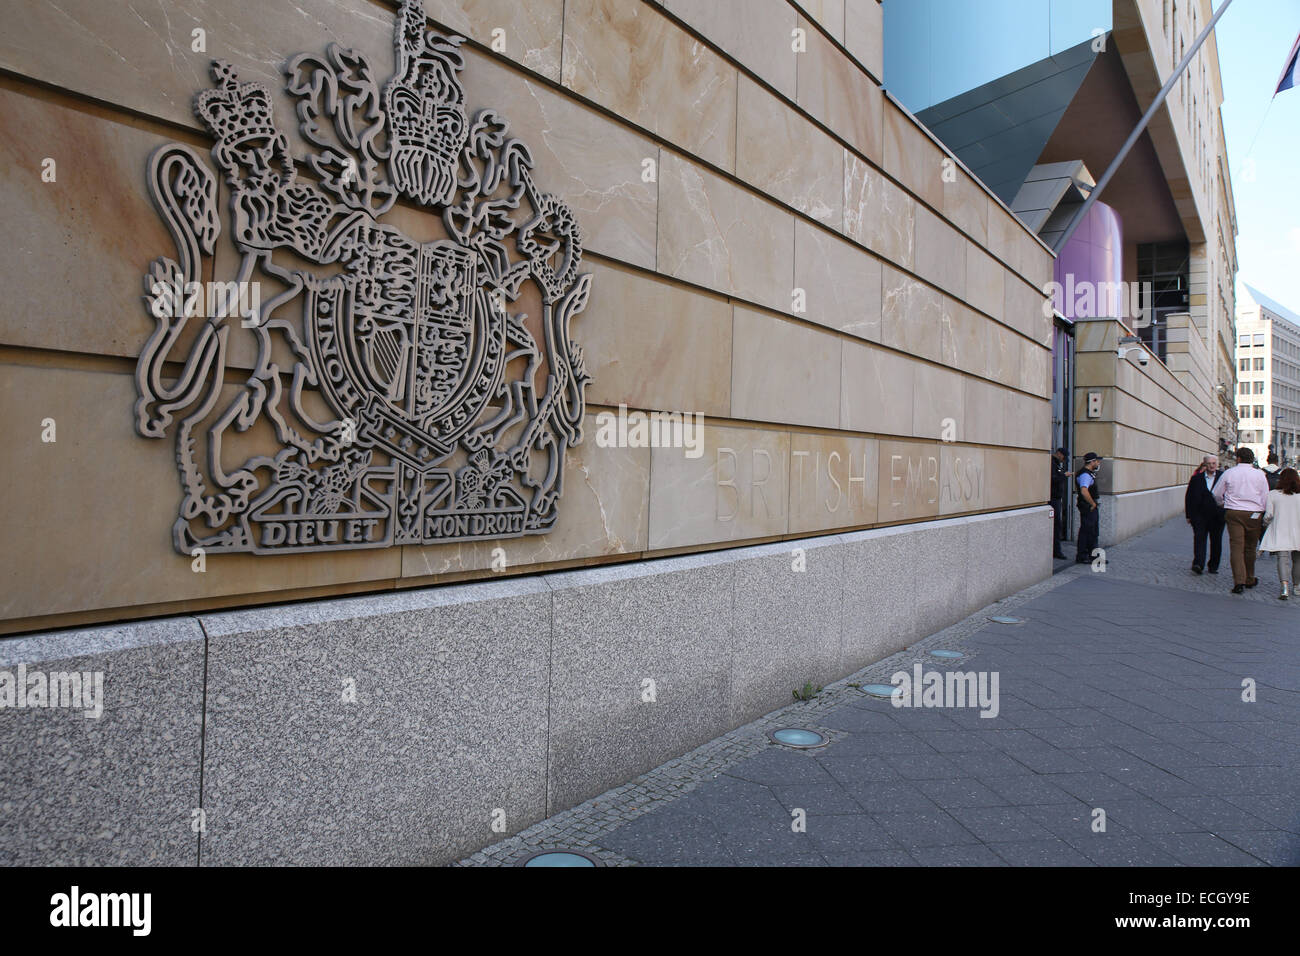 berlin british embassy building front entrance 'dieu et mon droit' Stock Photo